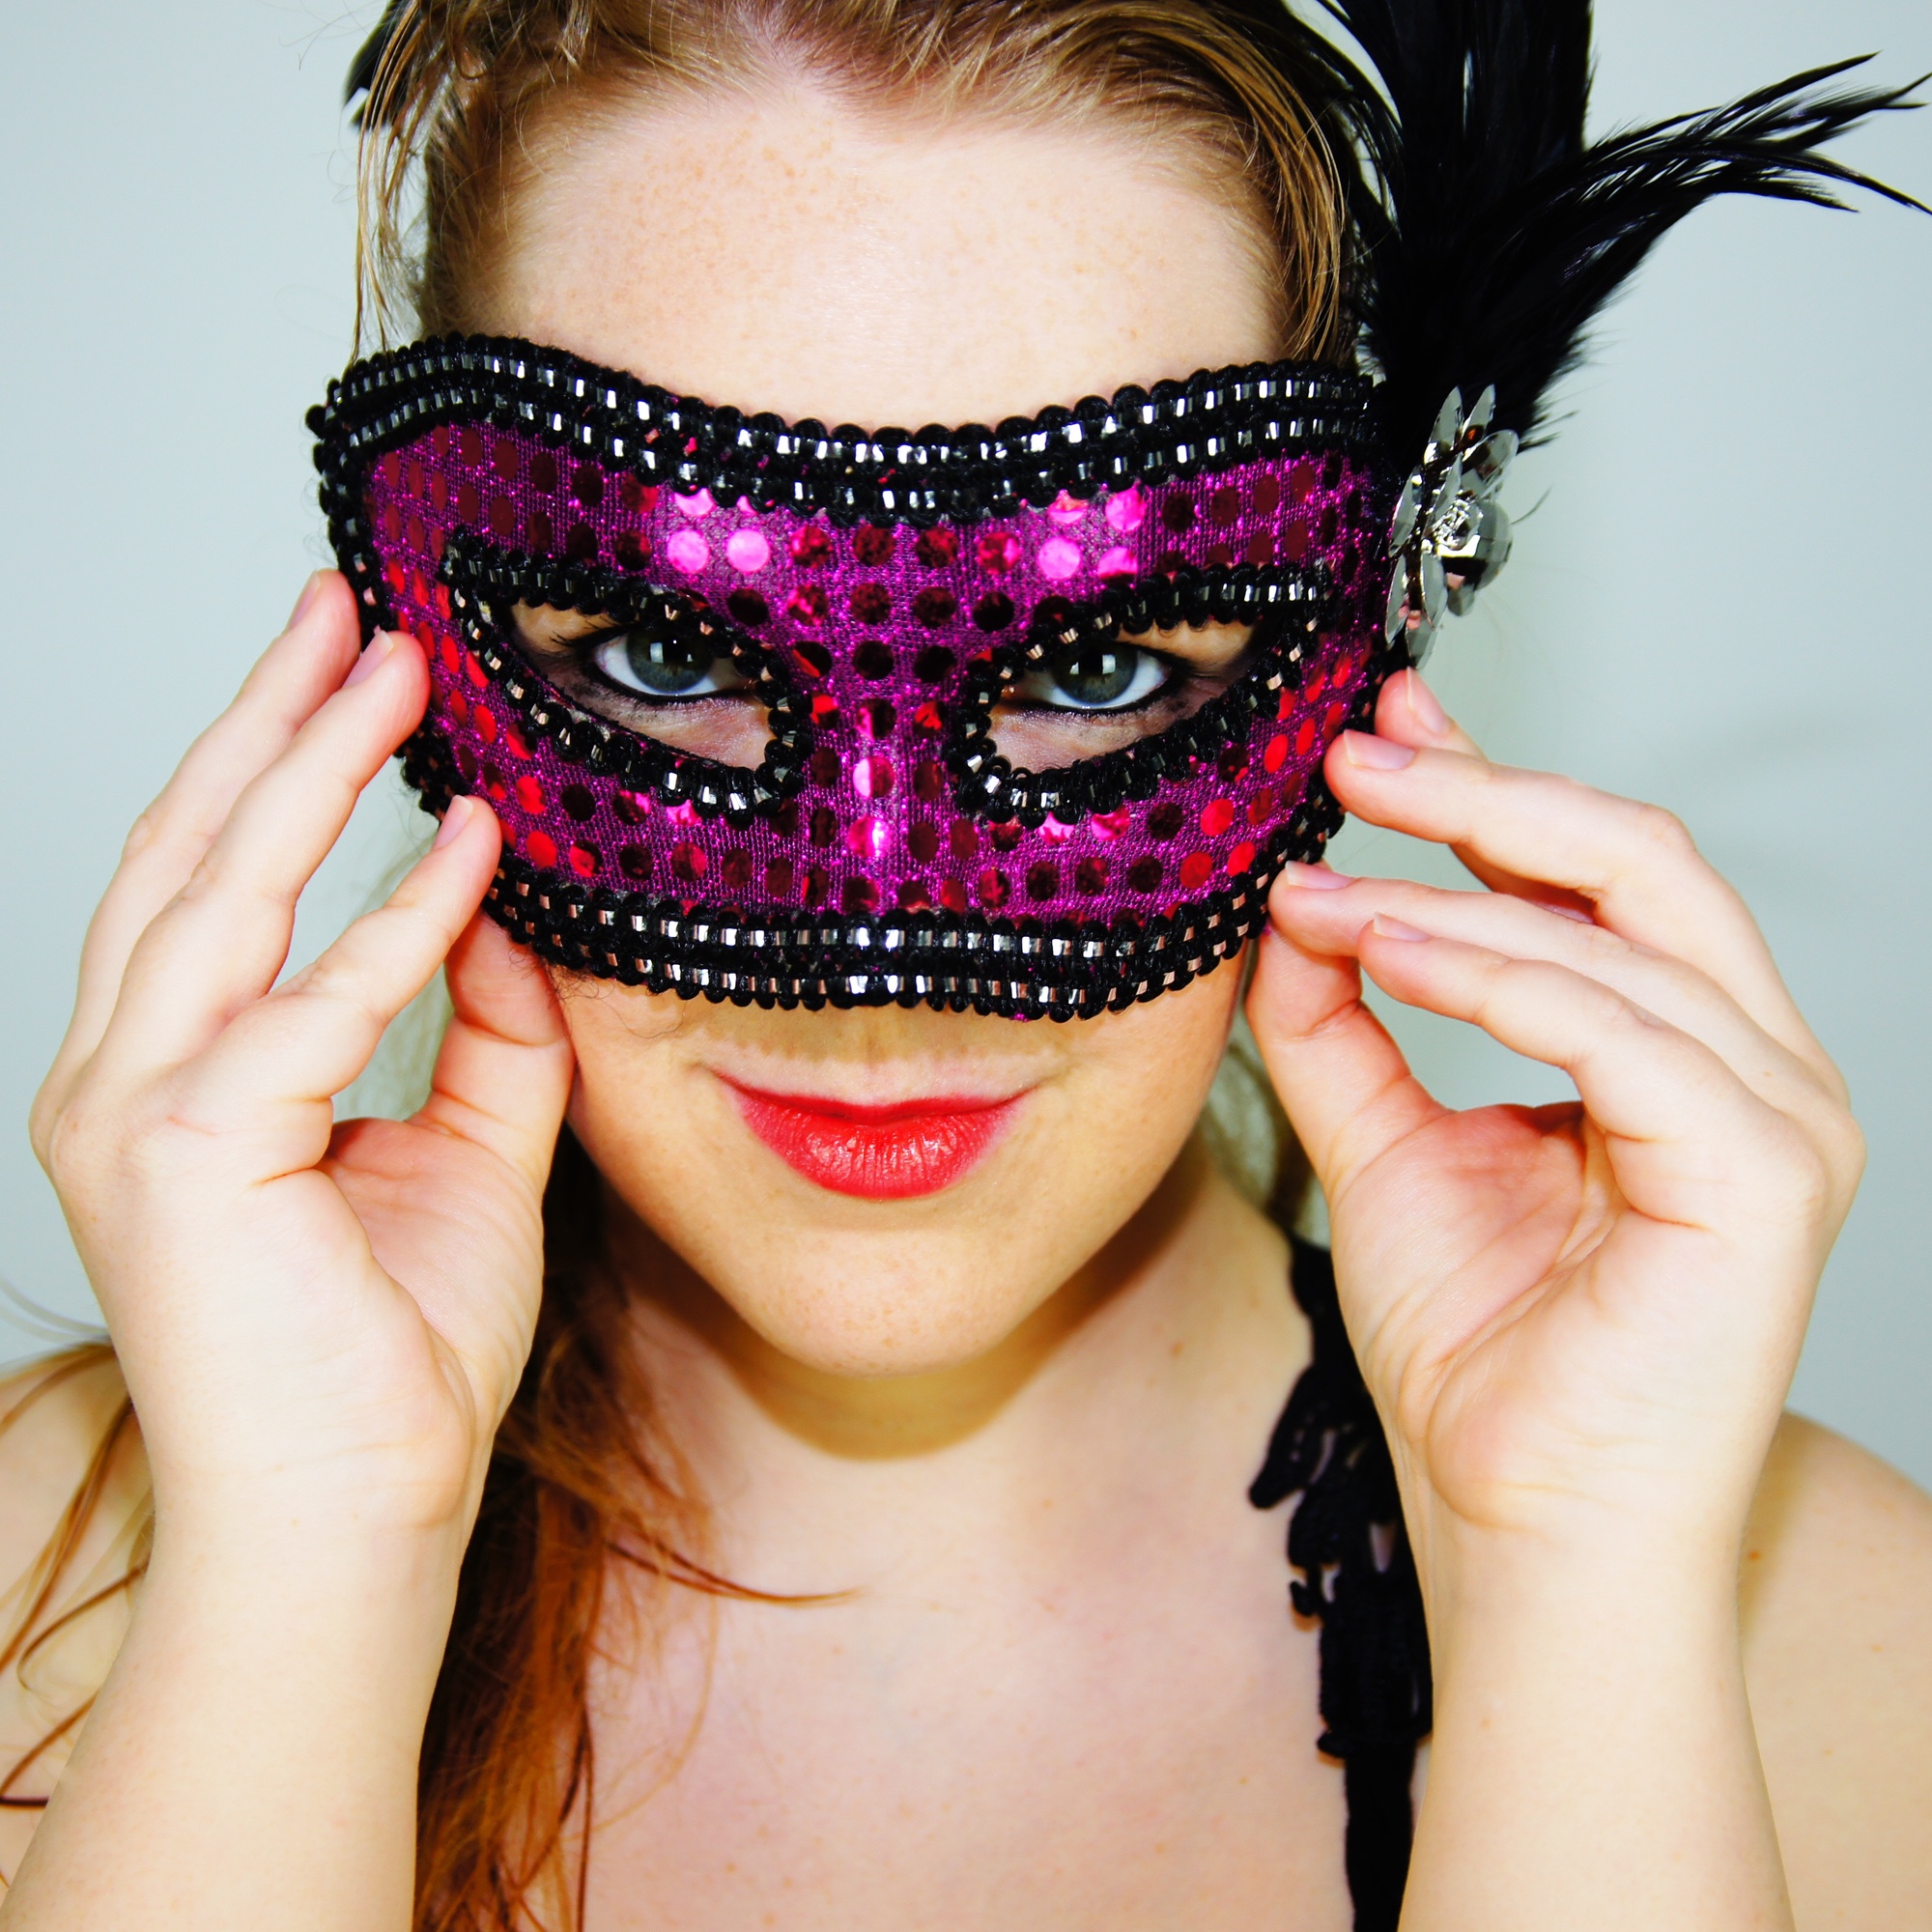 Foto: Frau, die sich eine Maske vor das Gesicht hält